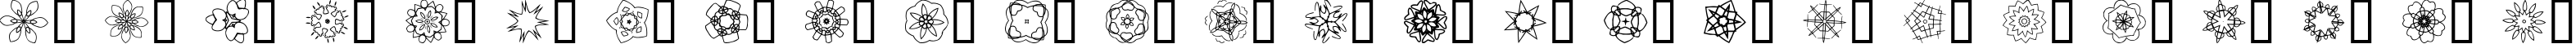 Пример написания английского алфавита шрифтом JI Kaleidoscope Bats 3